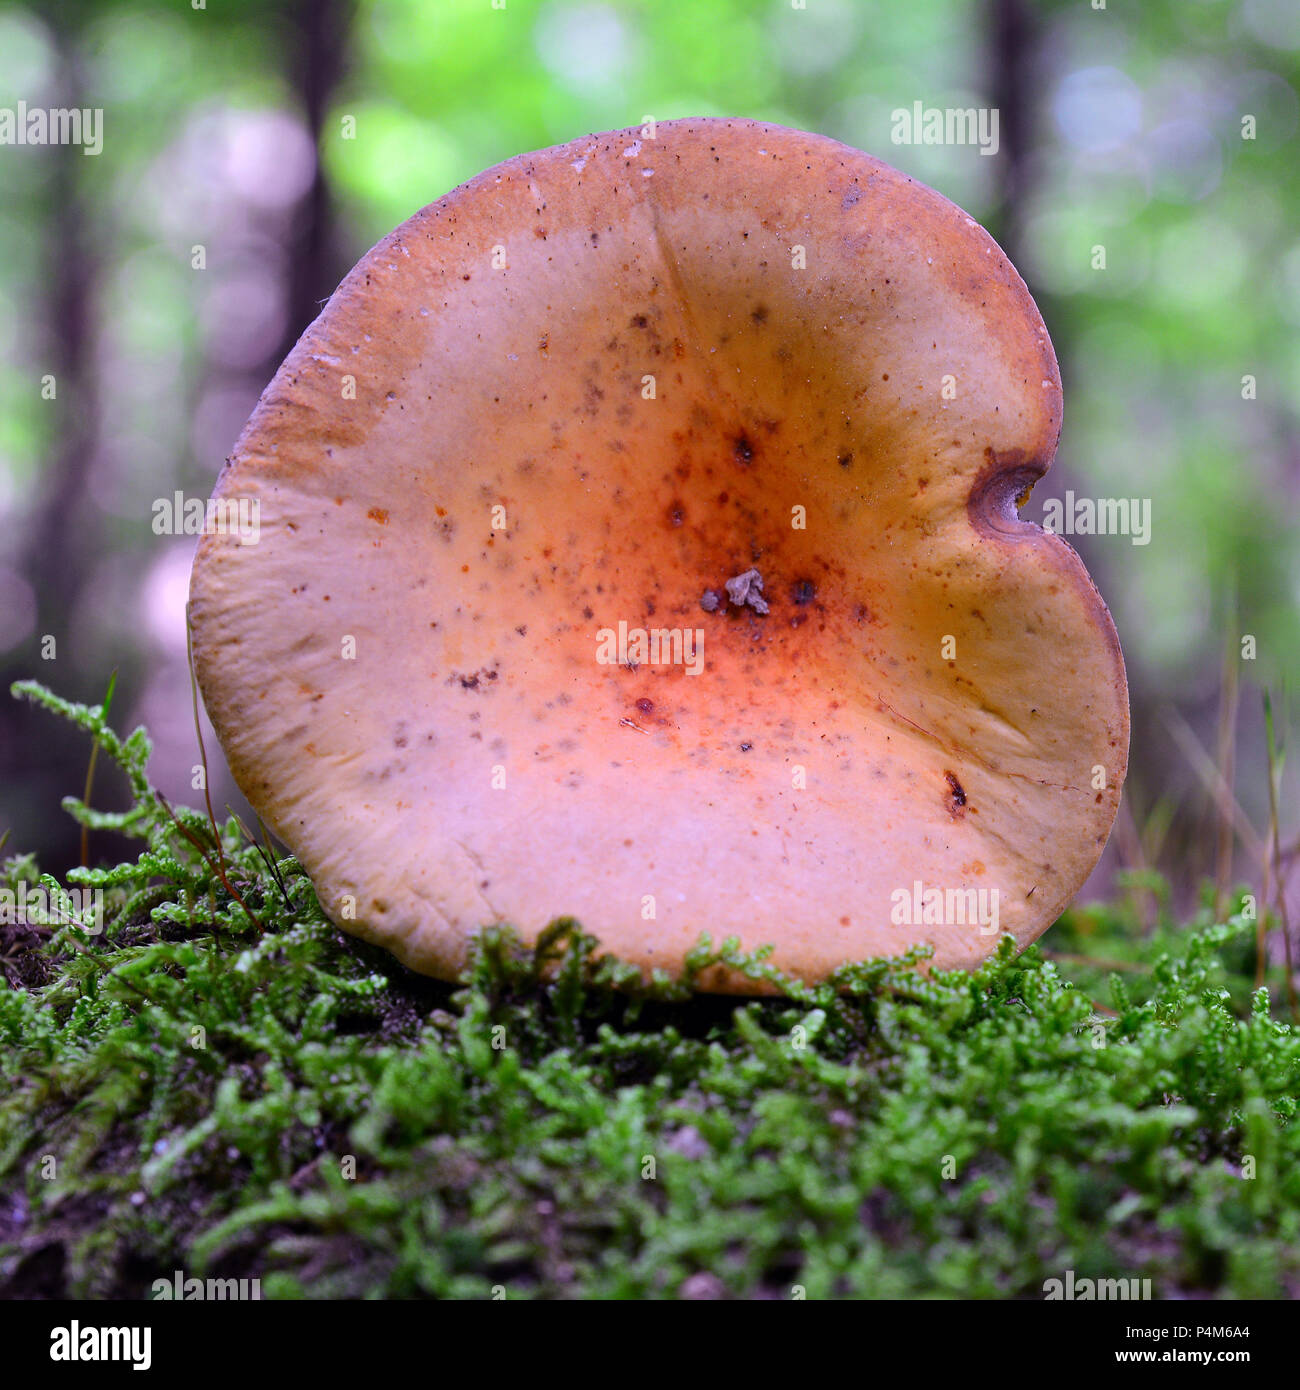 edible lactarius volemus mushroom in the woods Stock Photo